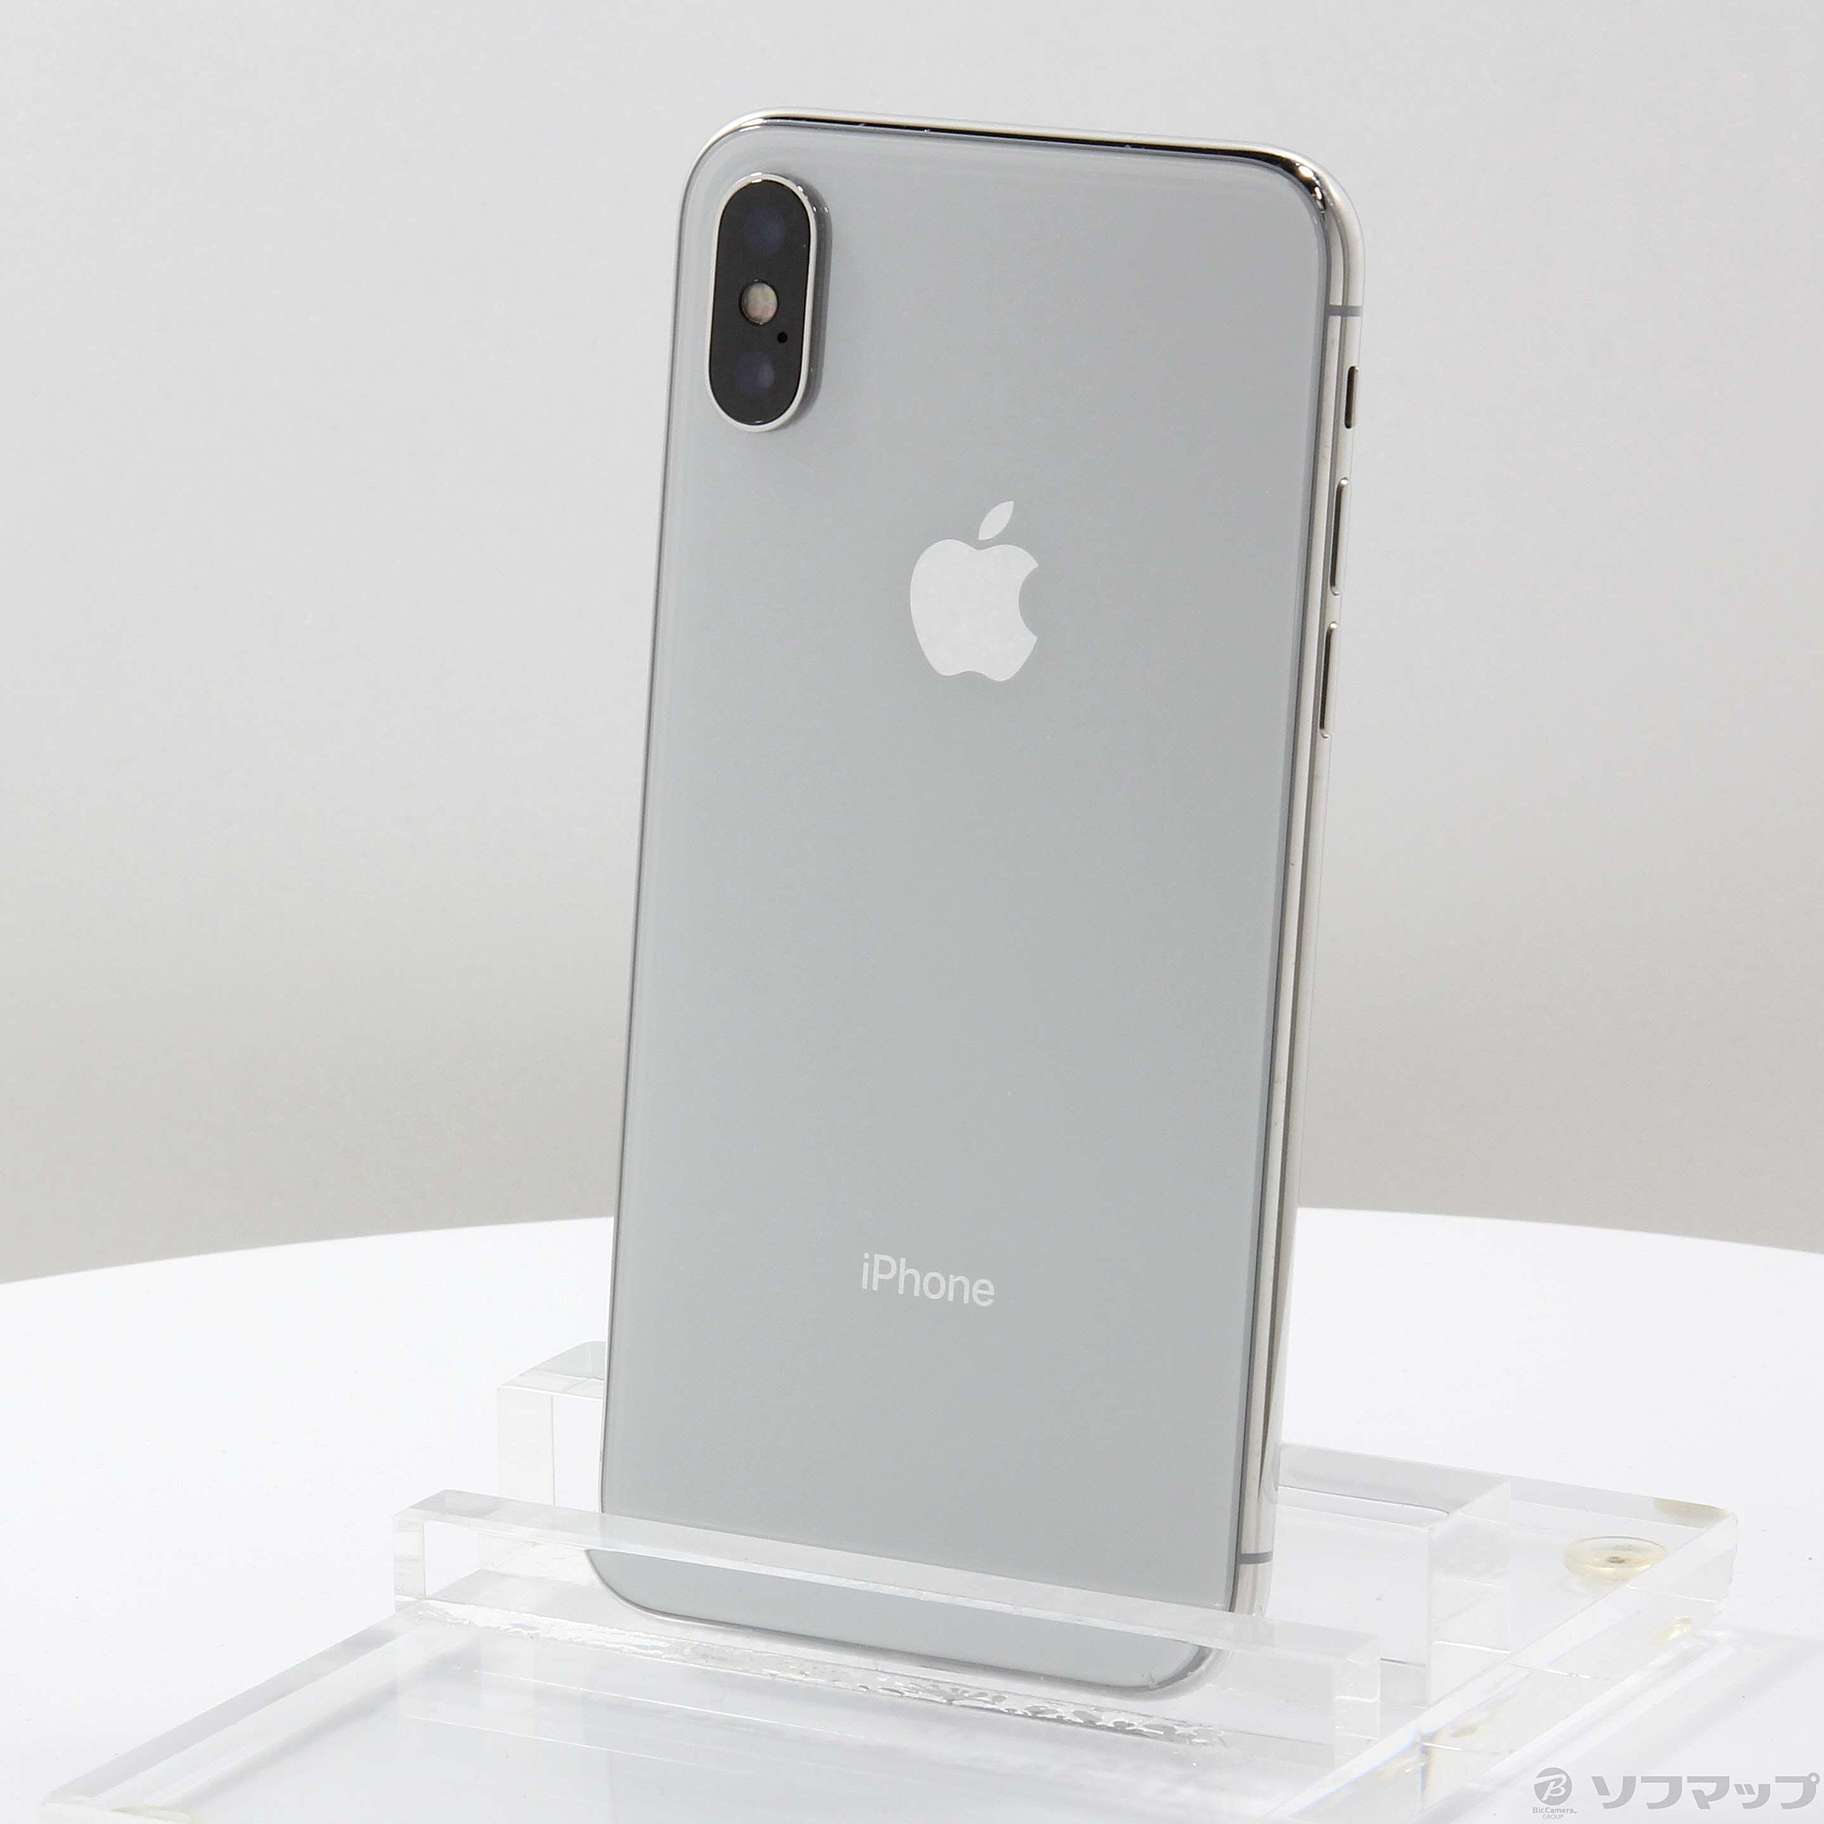 iPhoneX 64GB Silver